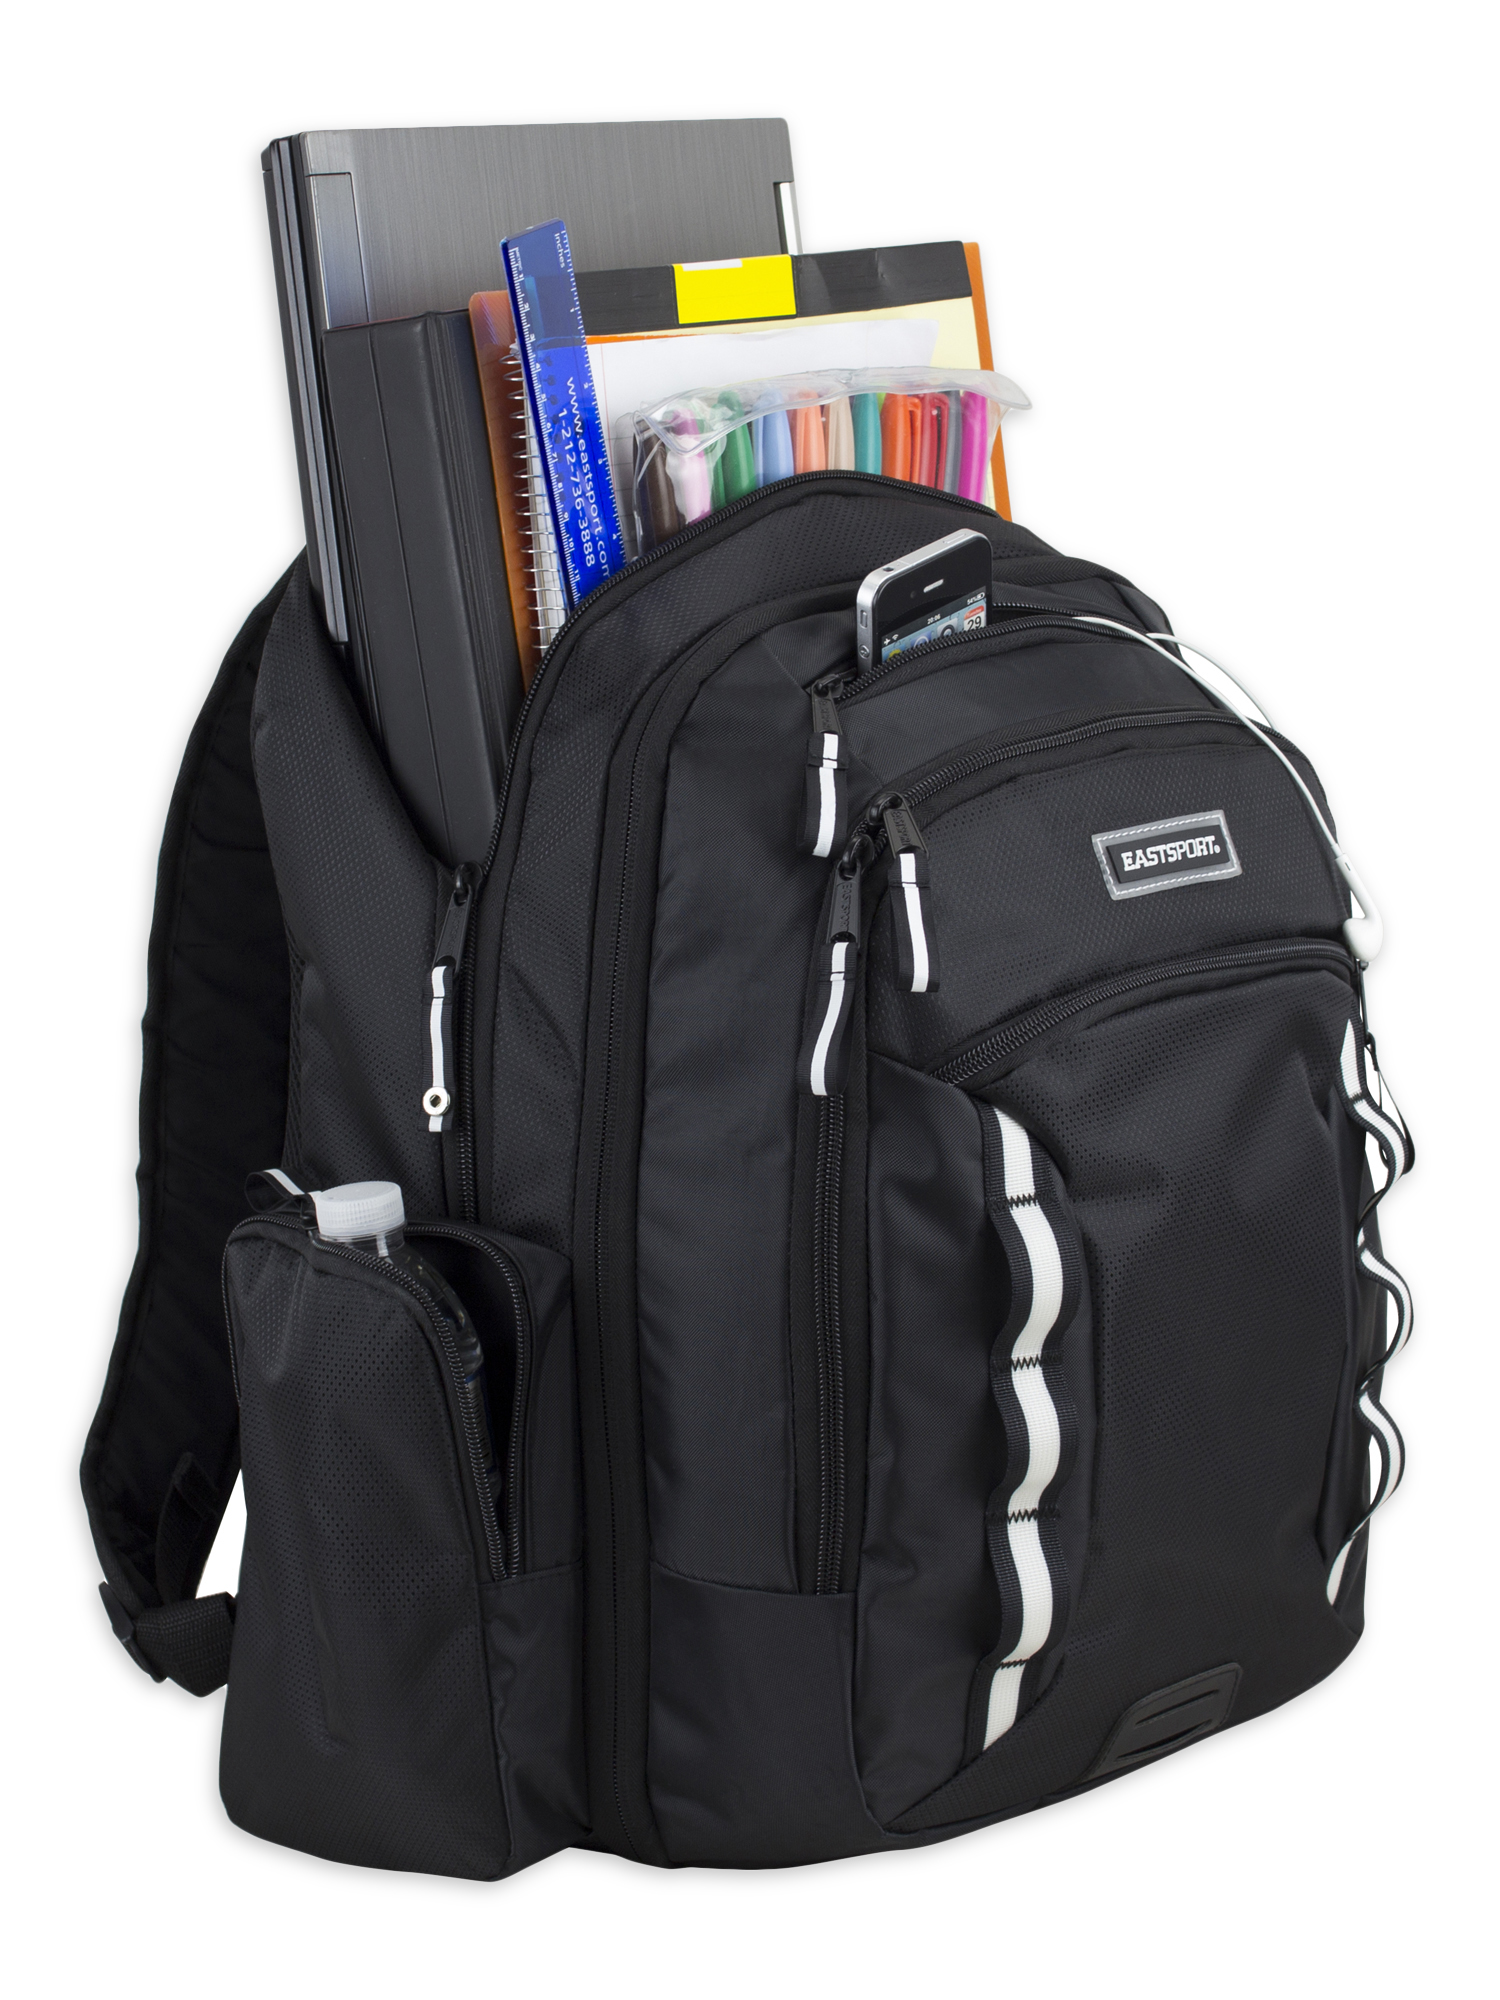 Eastsport Odyssey Backpack, Black - image 5 of 7